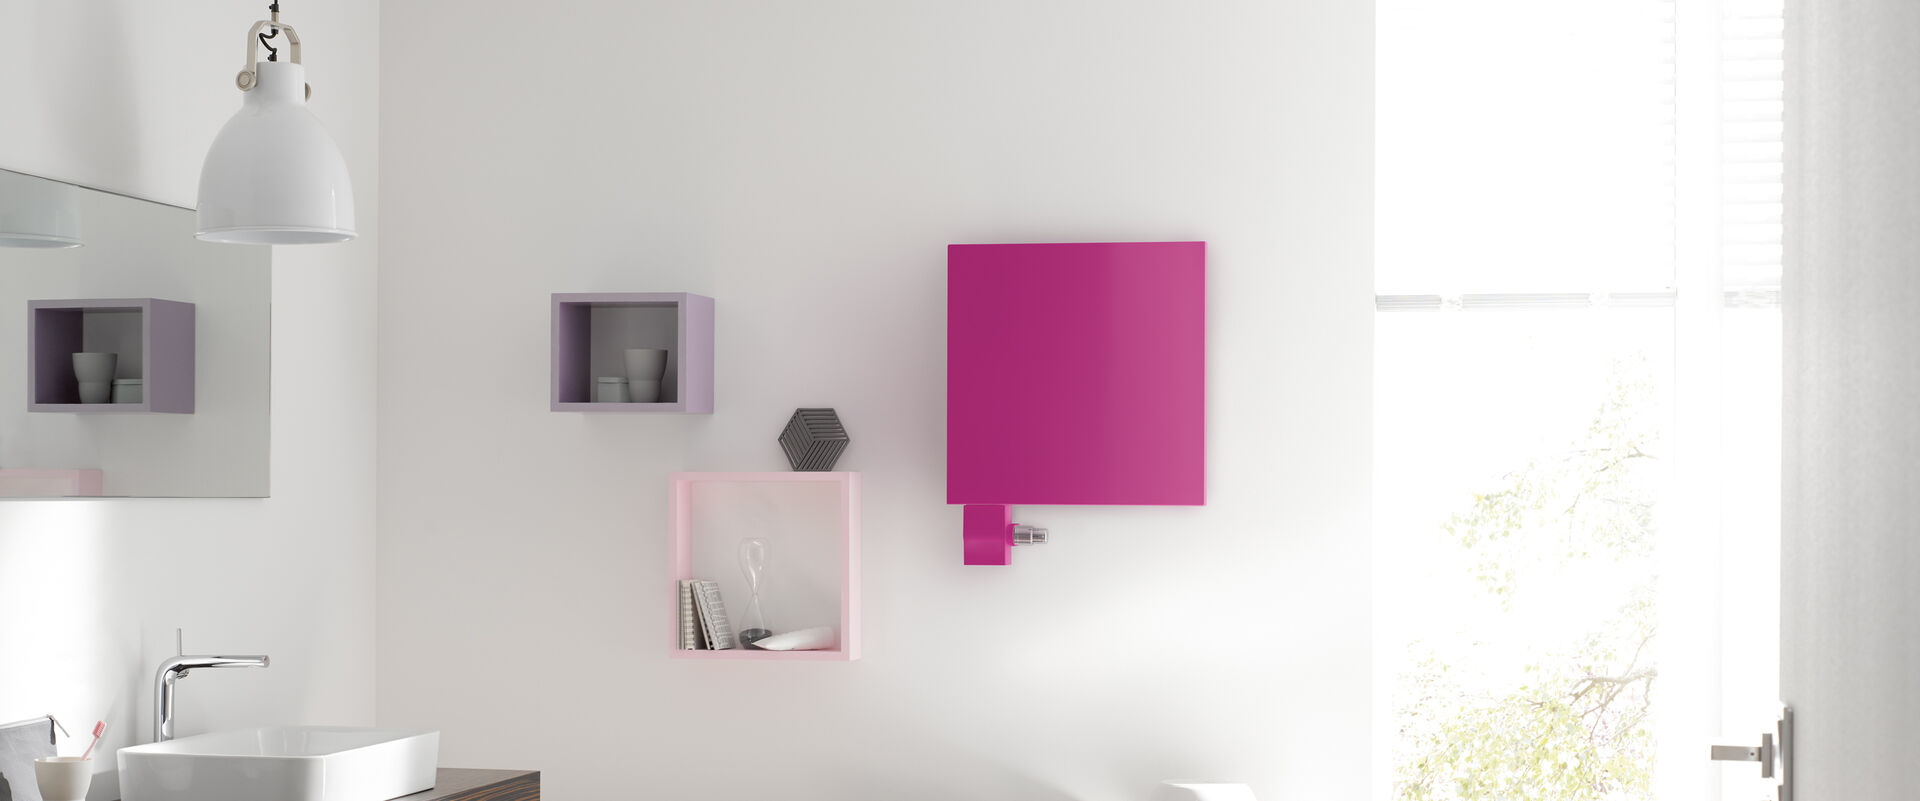 Moderner Heizkörper pinkfarbenes Quadrat an der Wand montiert im Badezimmer.